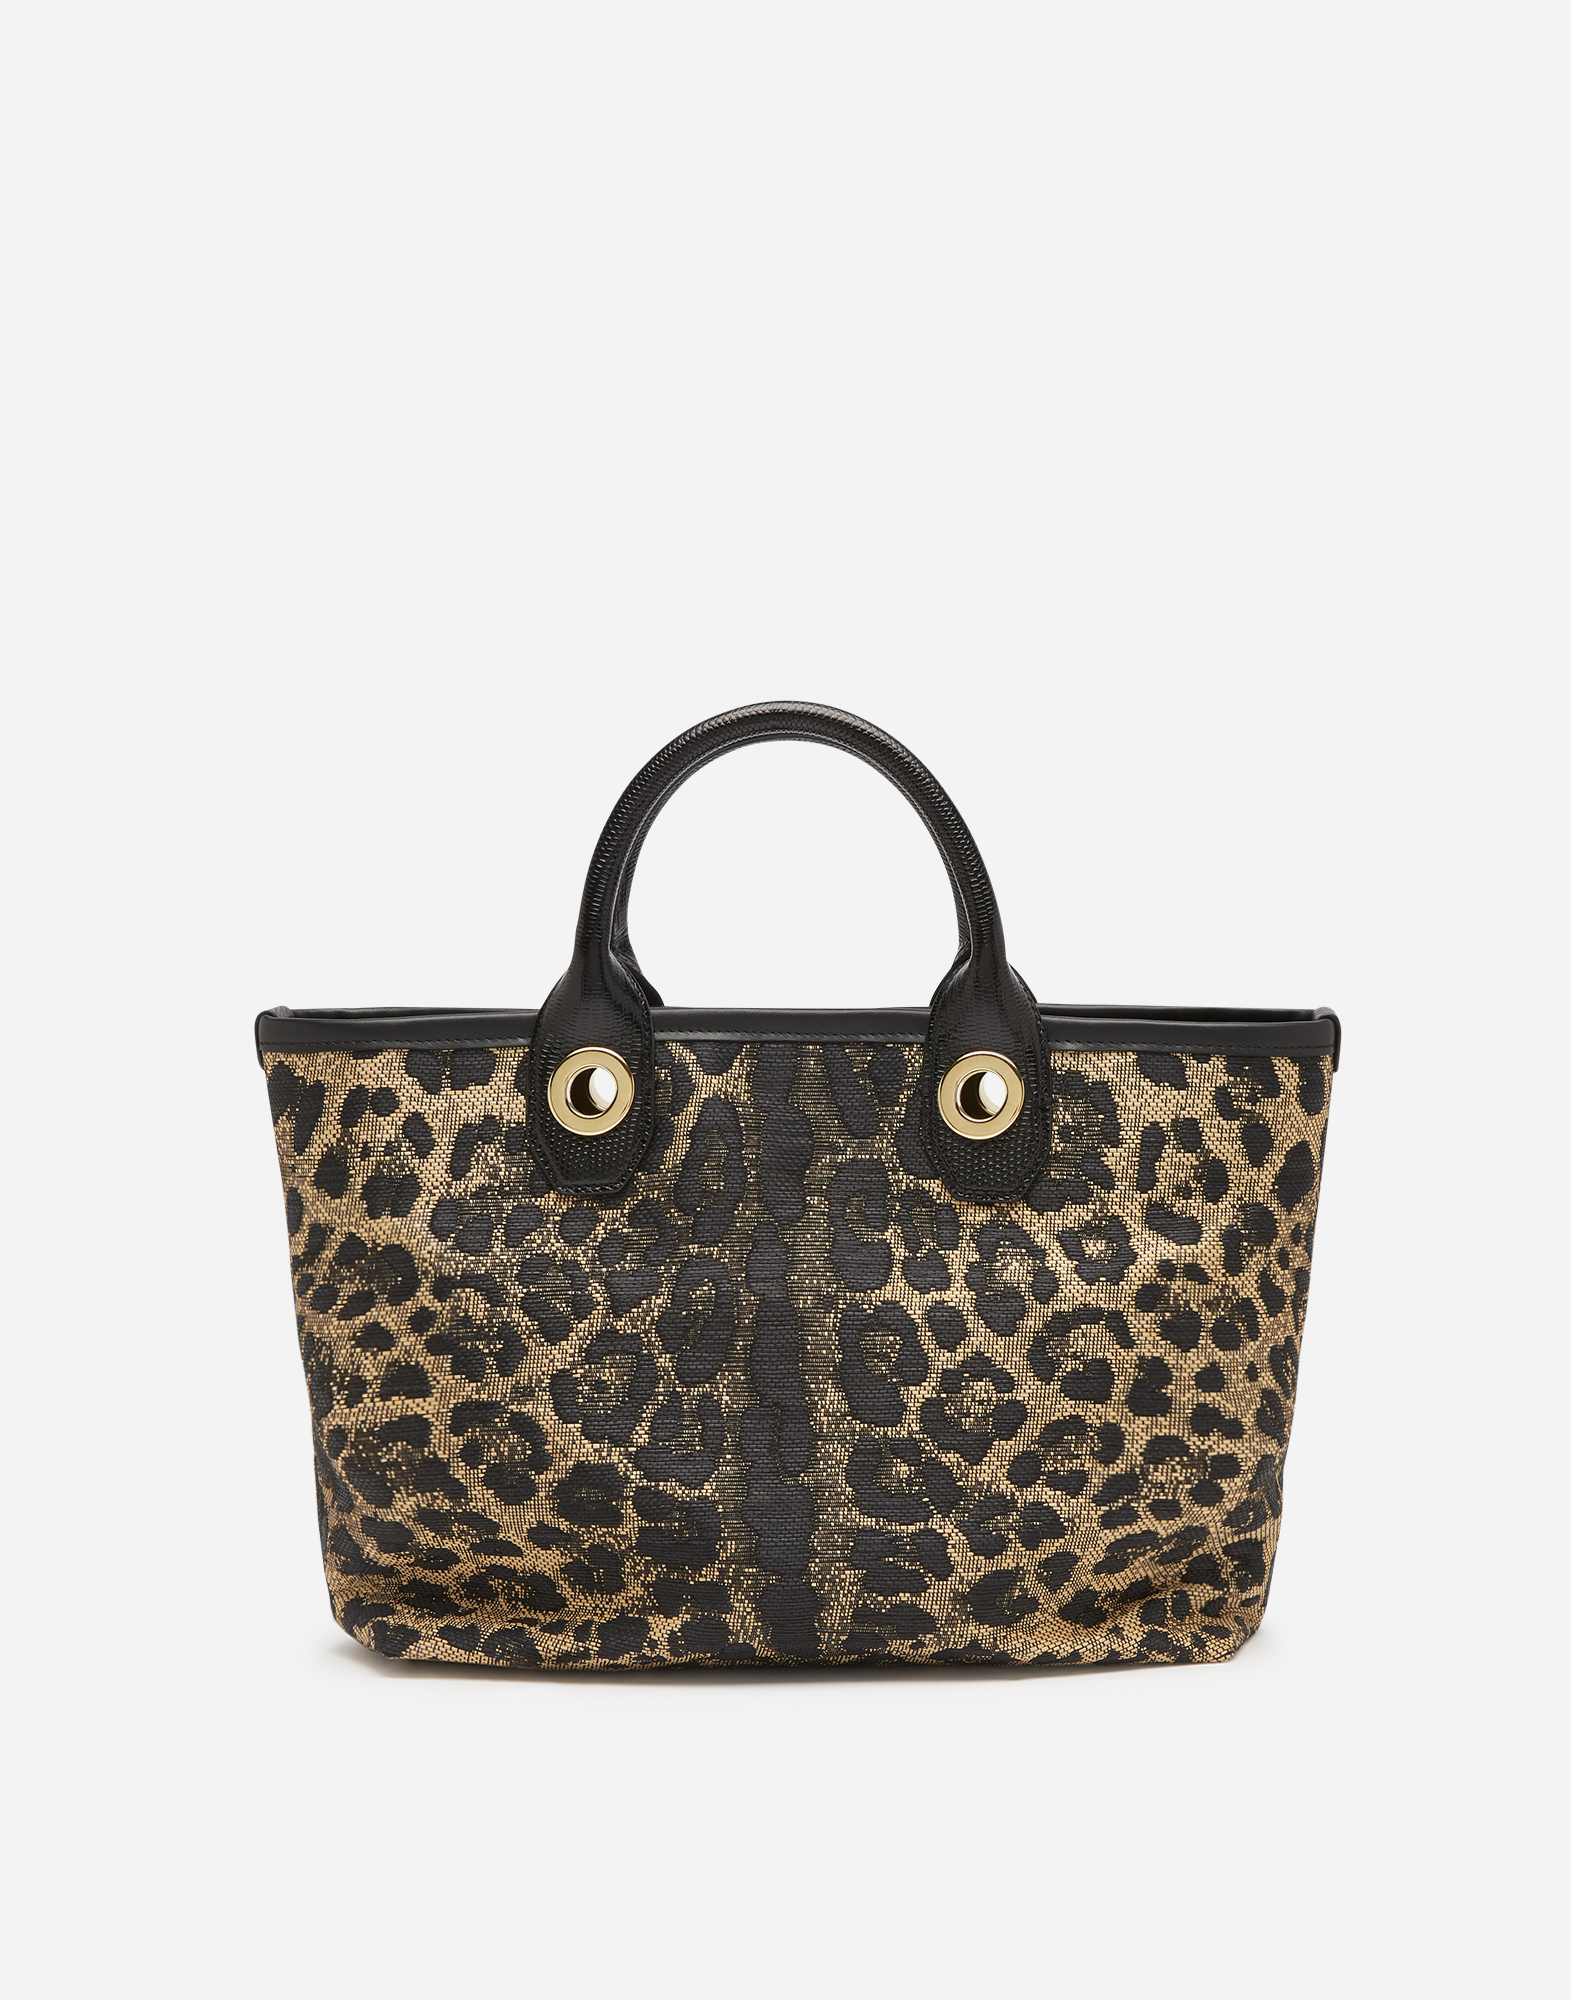 dolce gabbana bag leopard